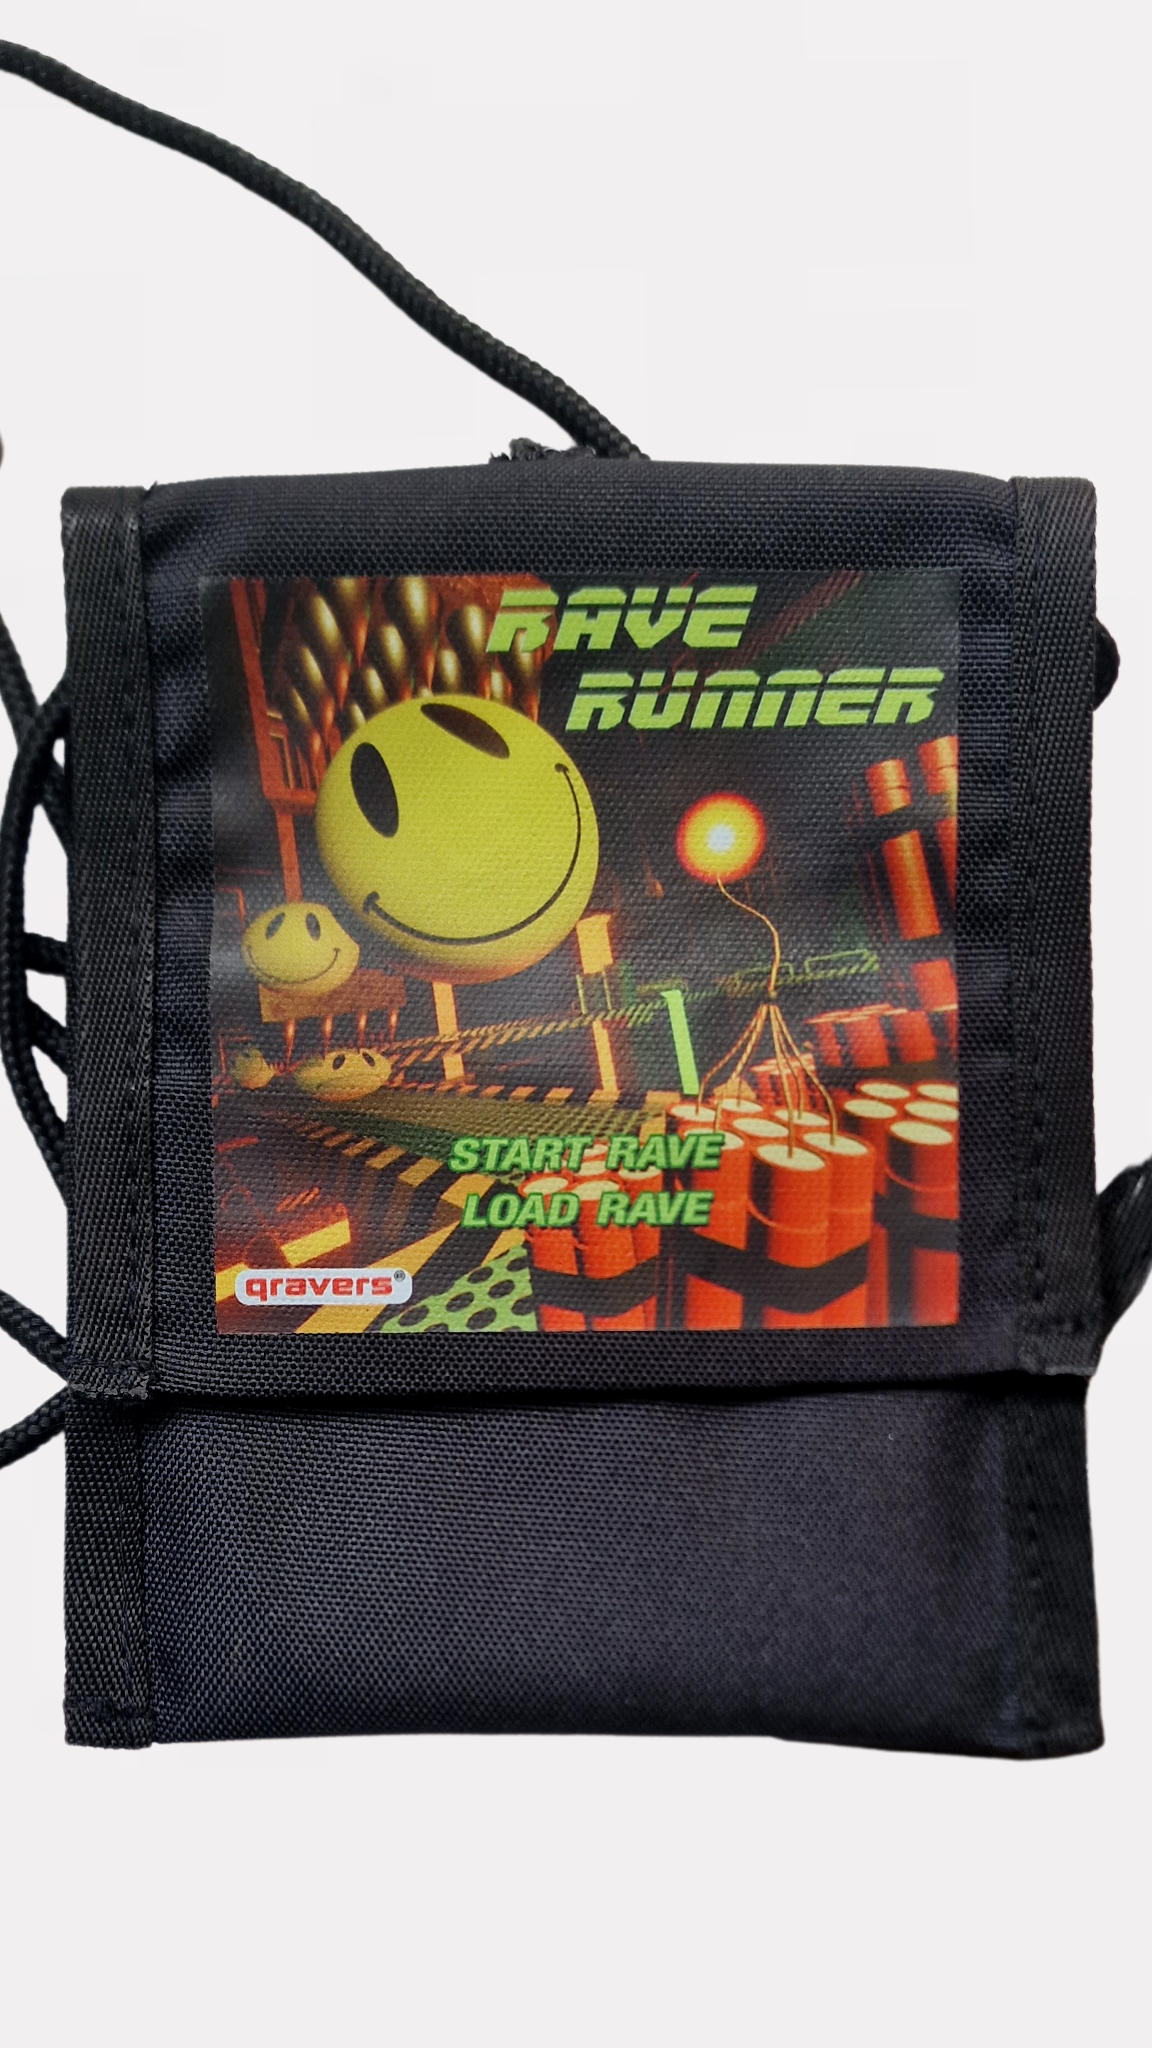 Rave Runner 3D Cross Body Bag Black